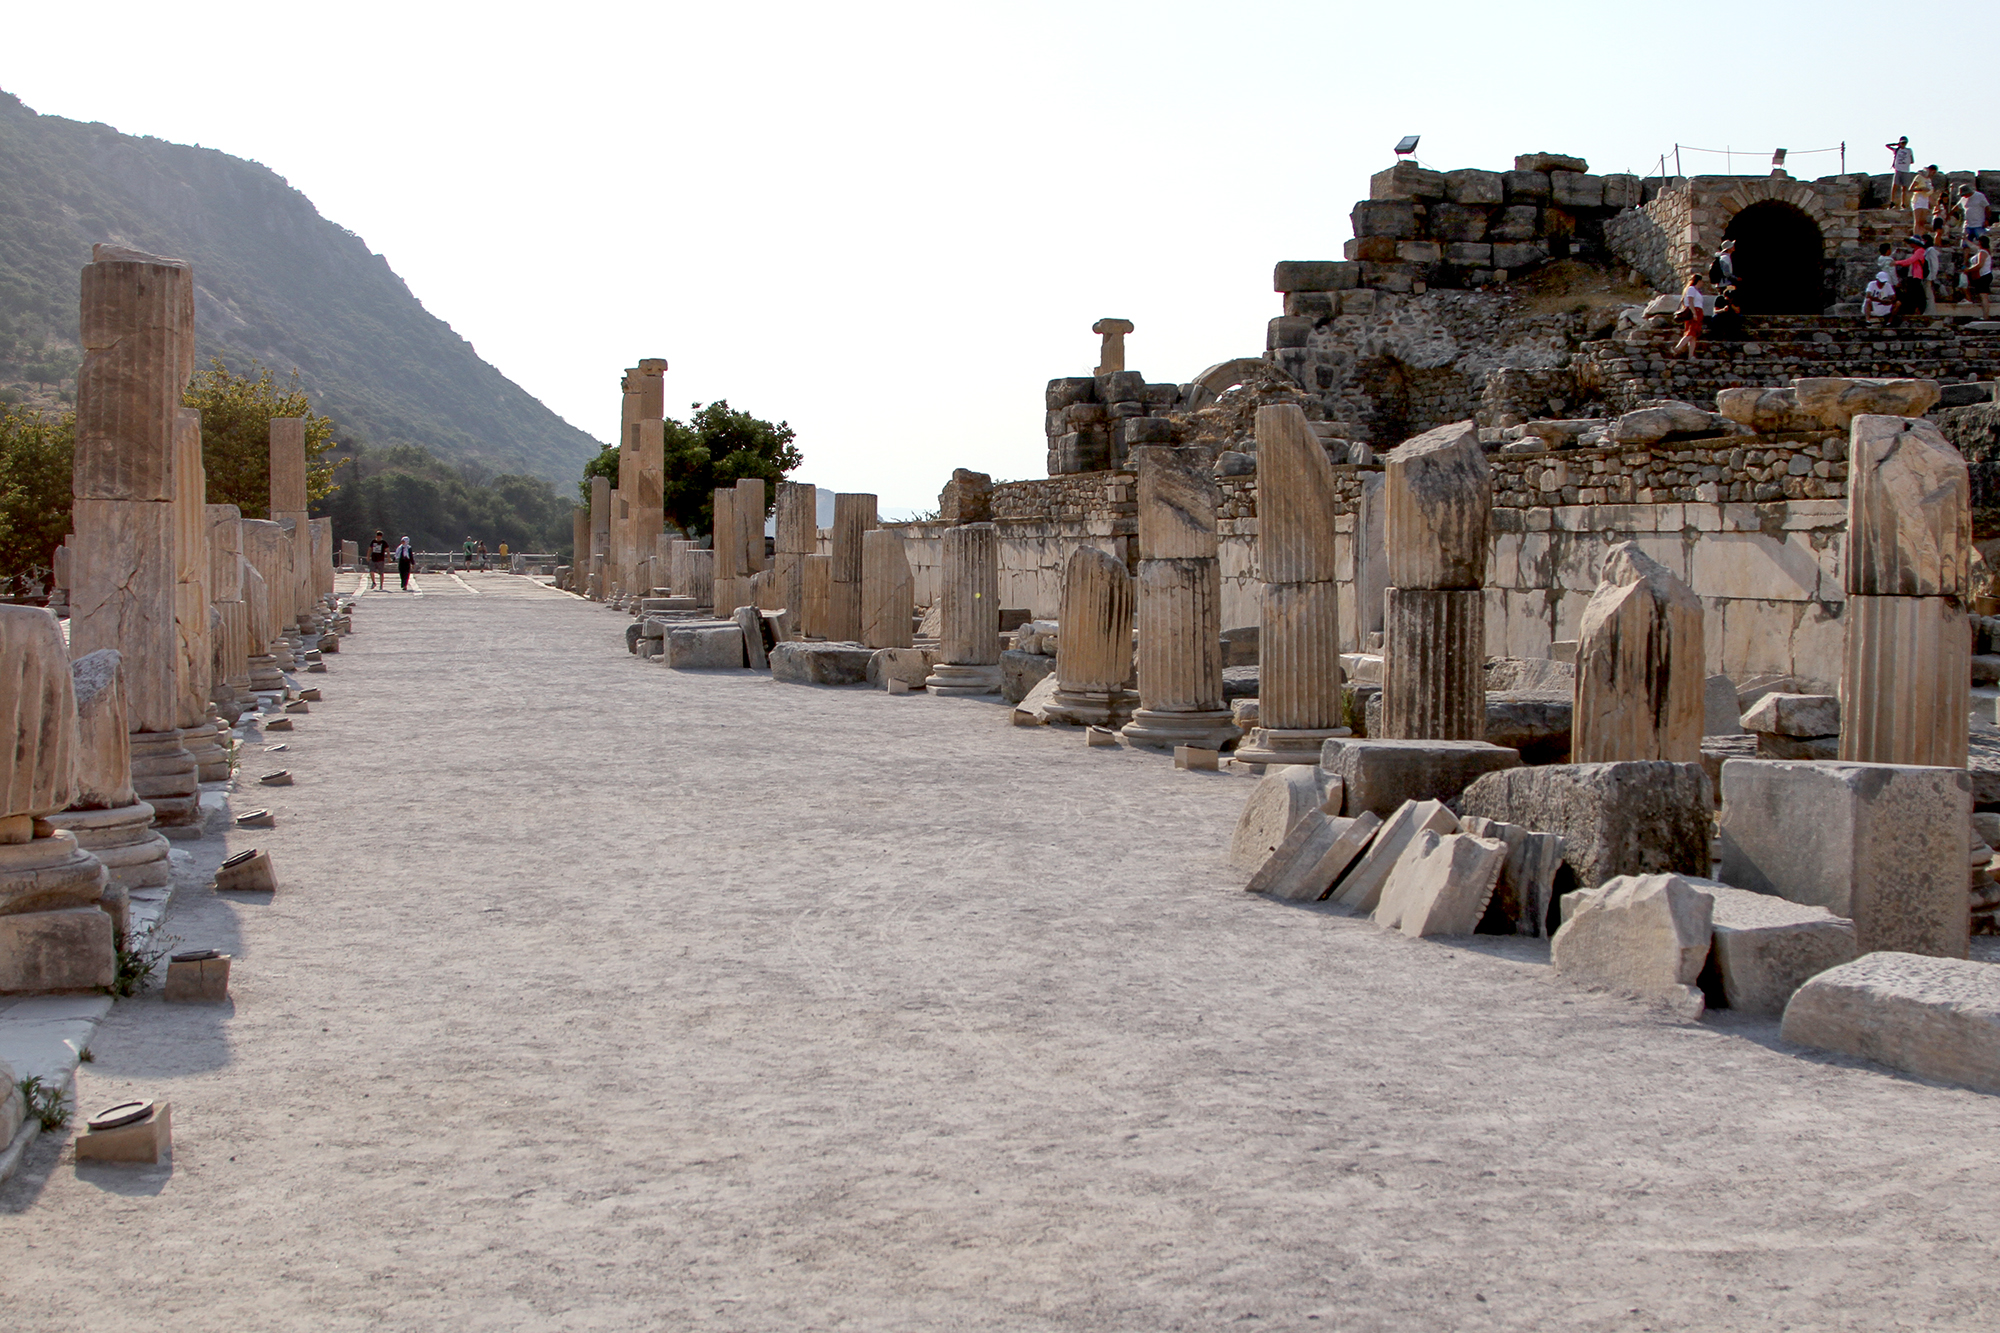 Удивительное место в Турции. Почему Эфес утратил свое торговое значение и пришел в упадок. Мои впечатления | Путешествую Konstantin Orekhov | OKEBLOG